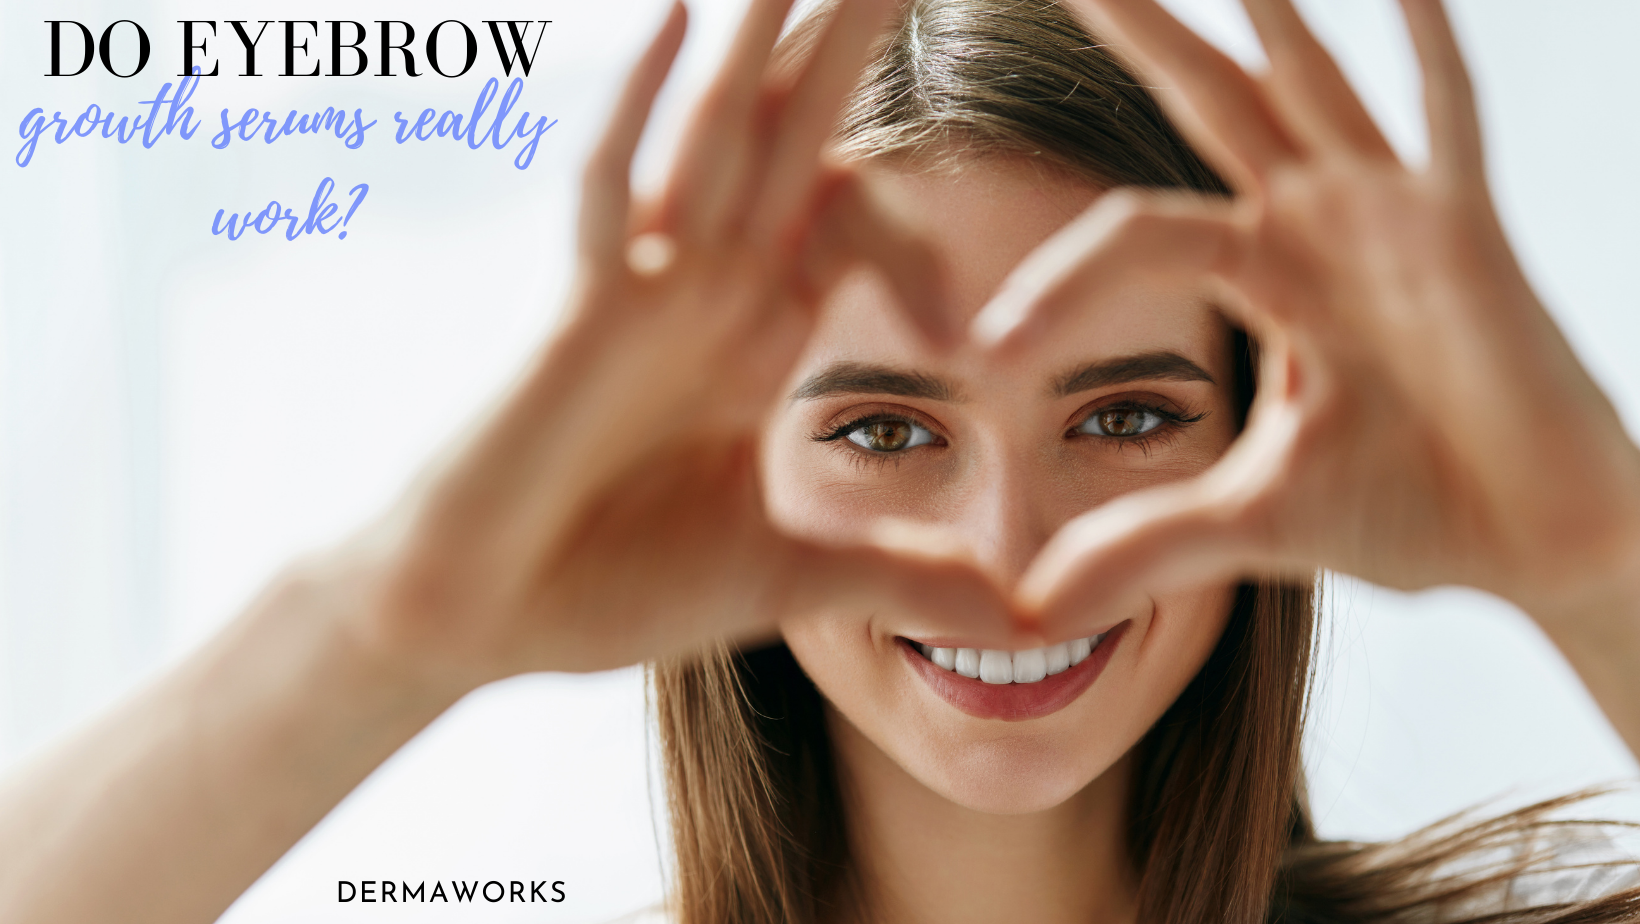 Do eyebrow serums really work?